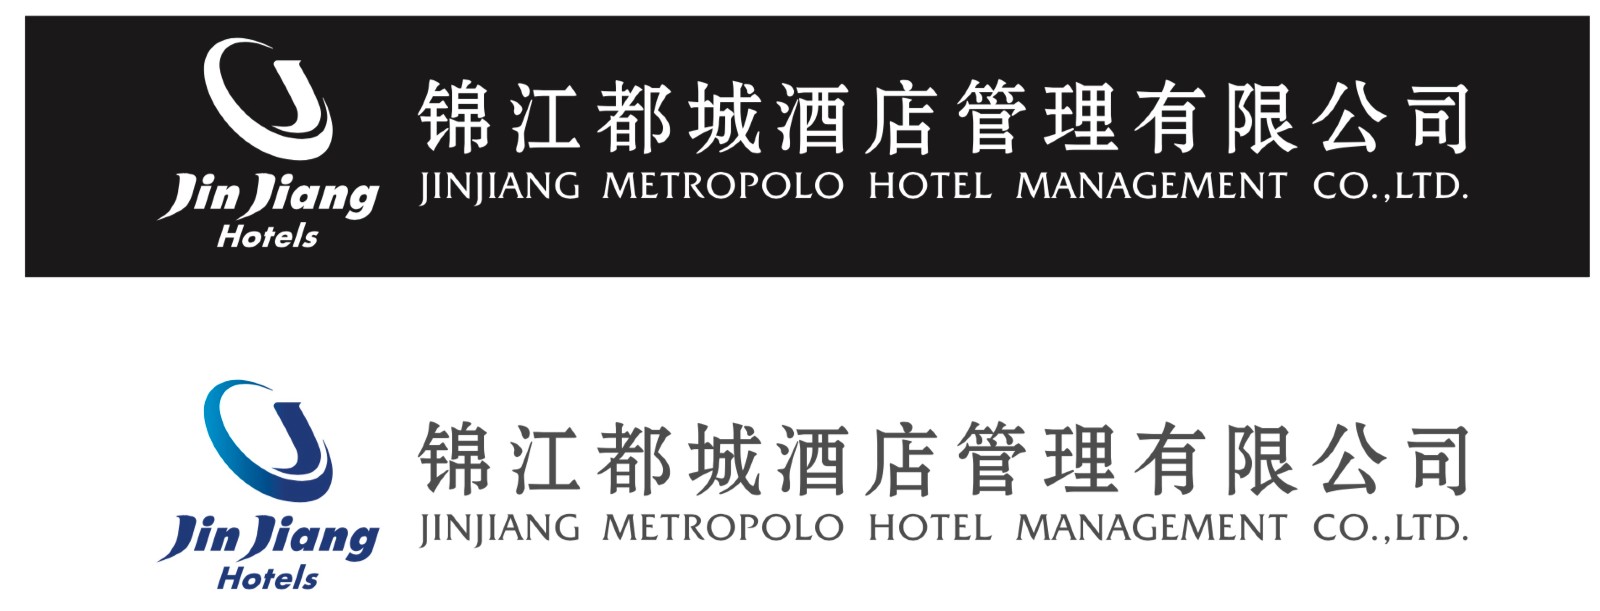 Jinjiang Metropolo Hotel Management Co. Ltd